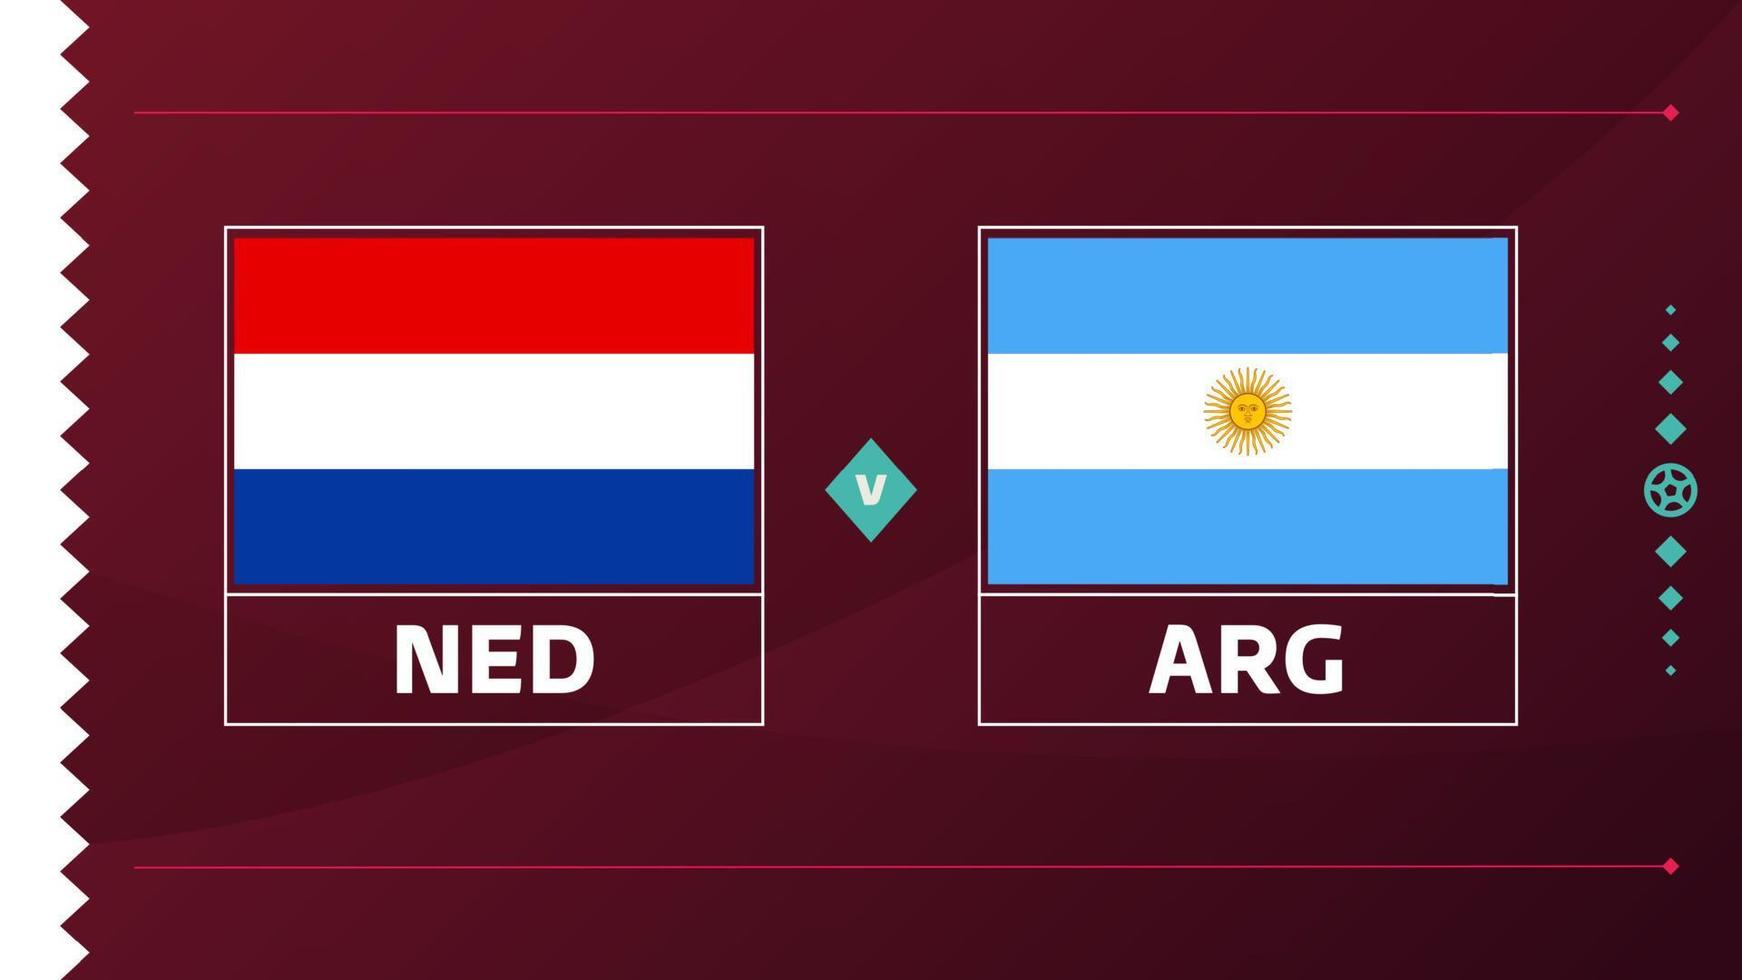 Olanda argentina spareggio trimestre finale incontro calcio 2022. 2022 mondo calcio campionato incontro contro squadre intro sport sfondo, campionato concorrenza manifesto, vettore